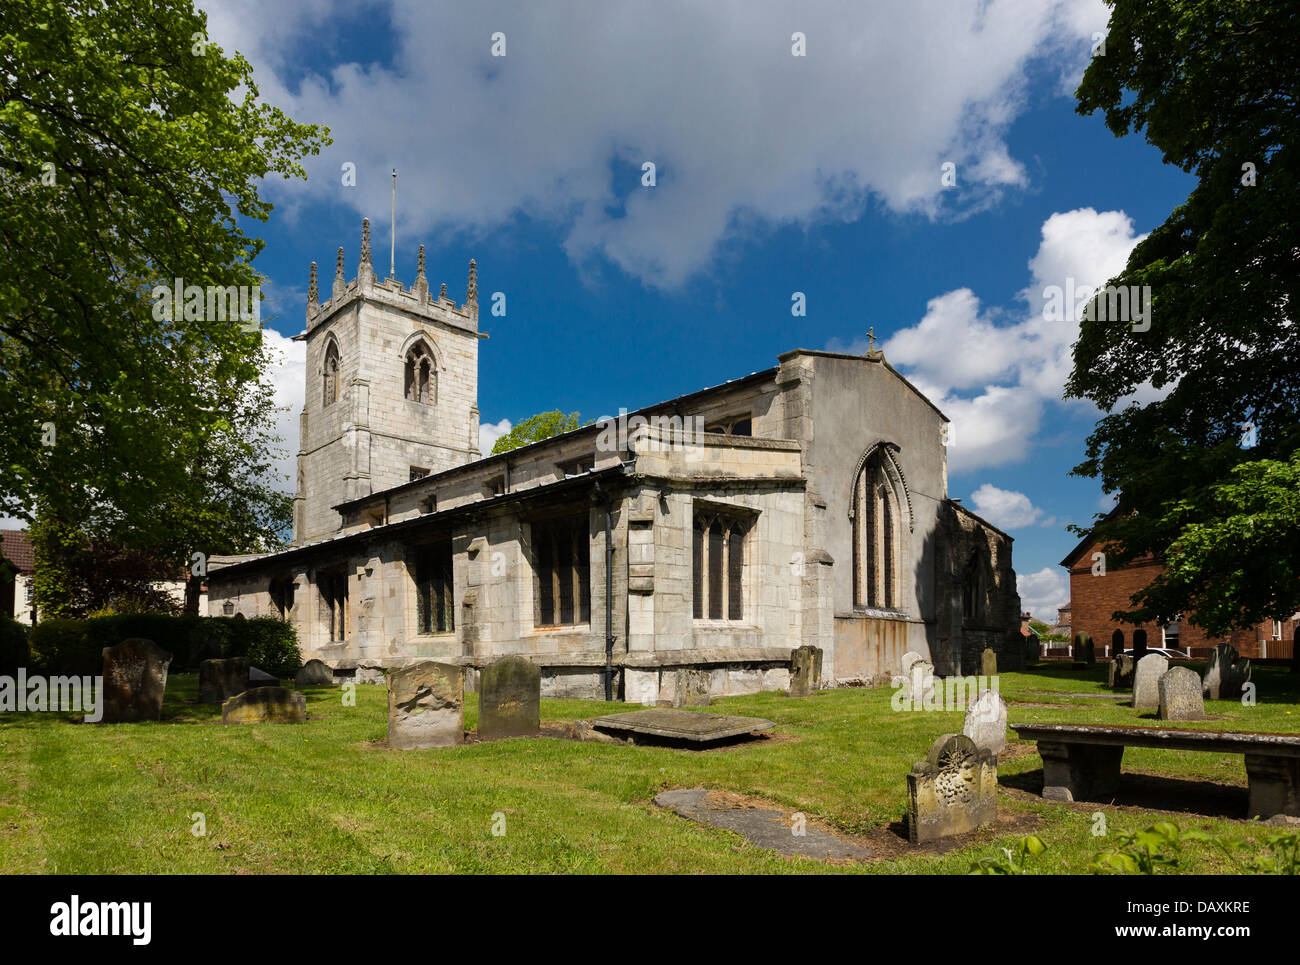 La Chiesa Parrocchiale di San Nicola in Bawtry, South Yorkshire. La chiesa è stata fondata nel 1190. Foto Stock